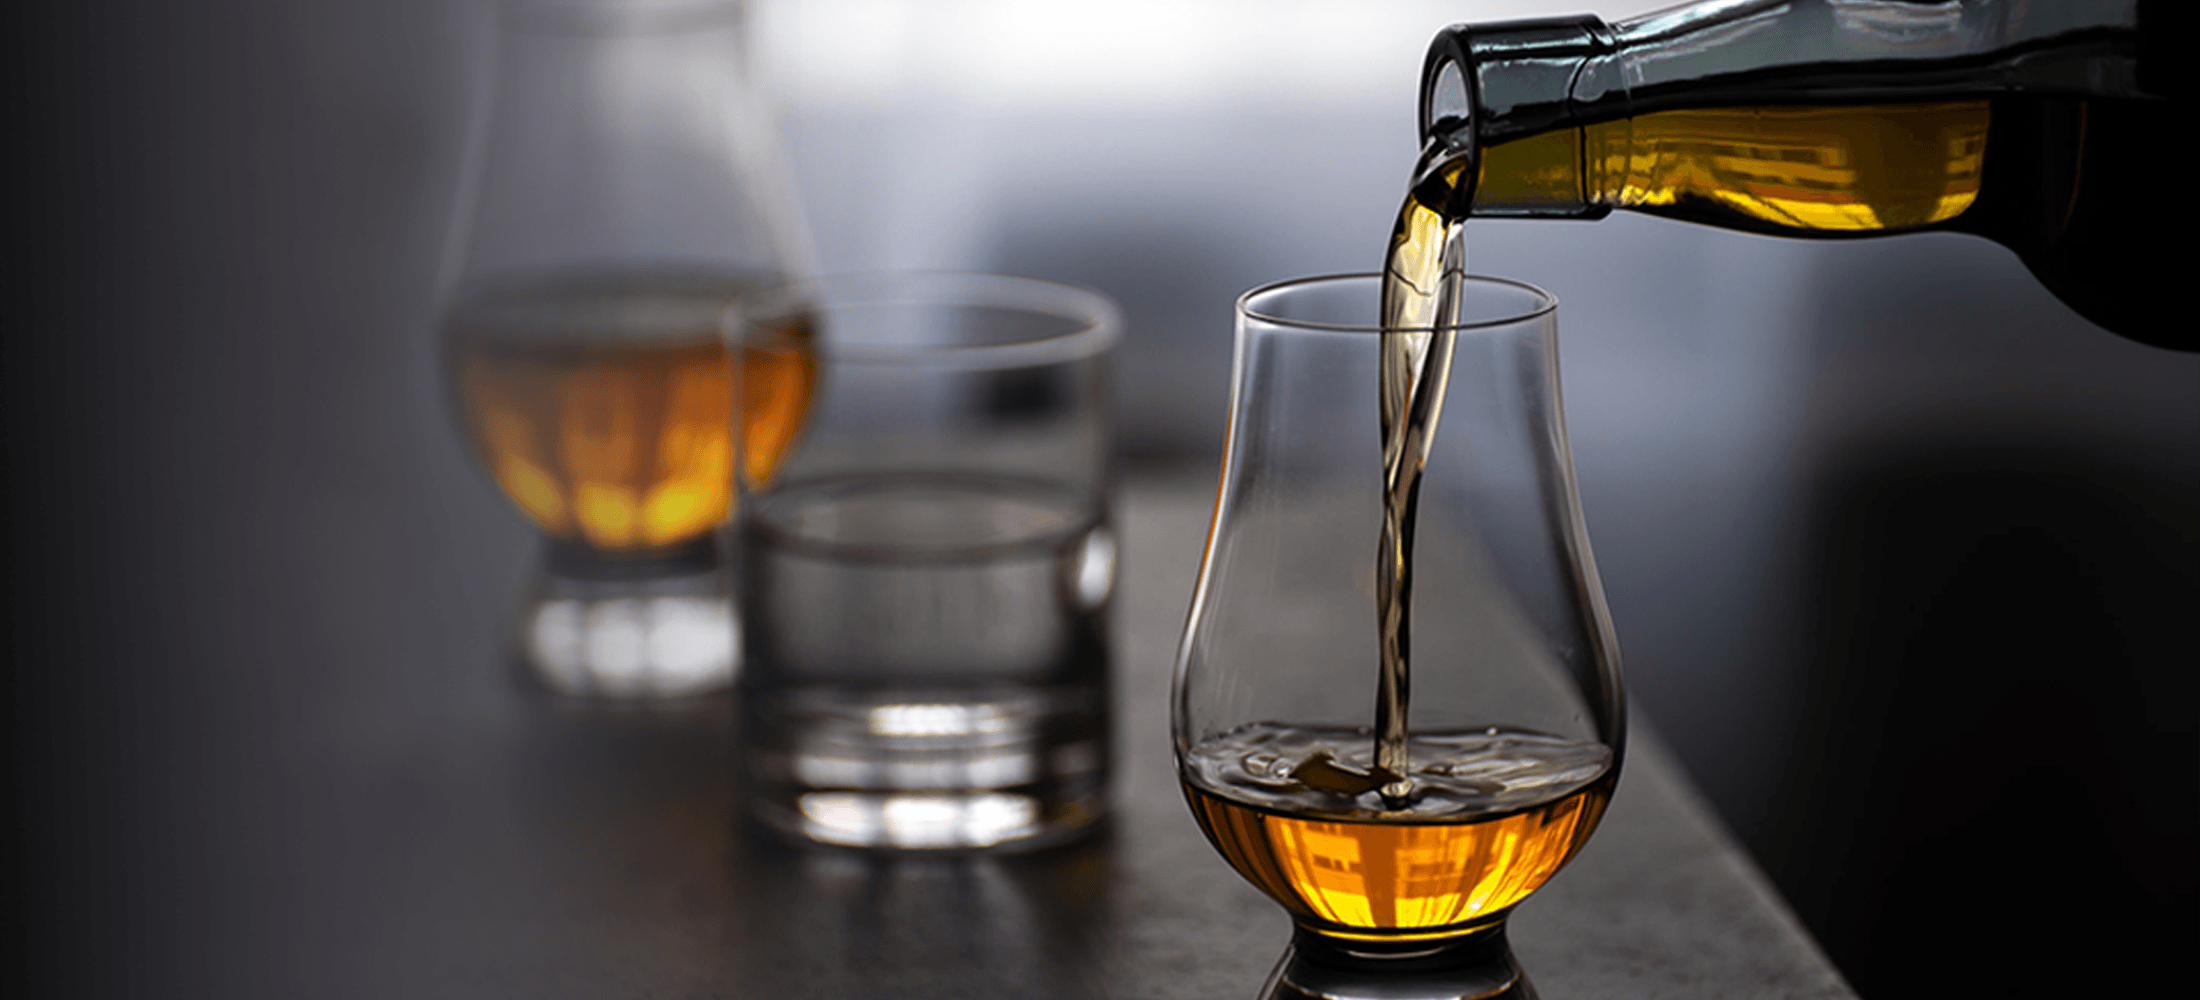 Scotch pouring